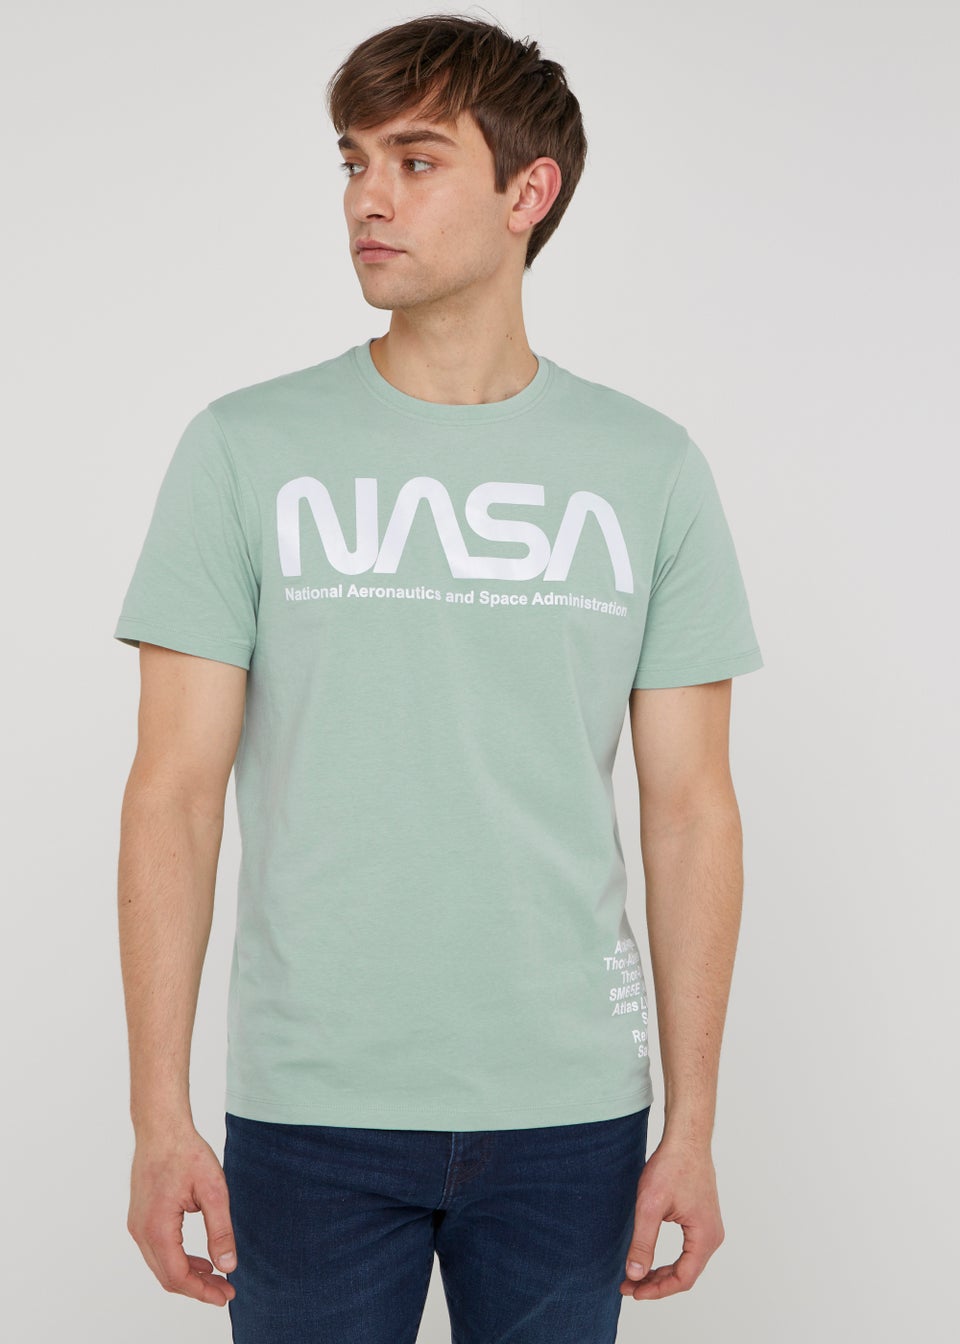 Teal Nasa T-Shirt